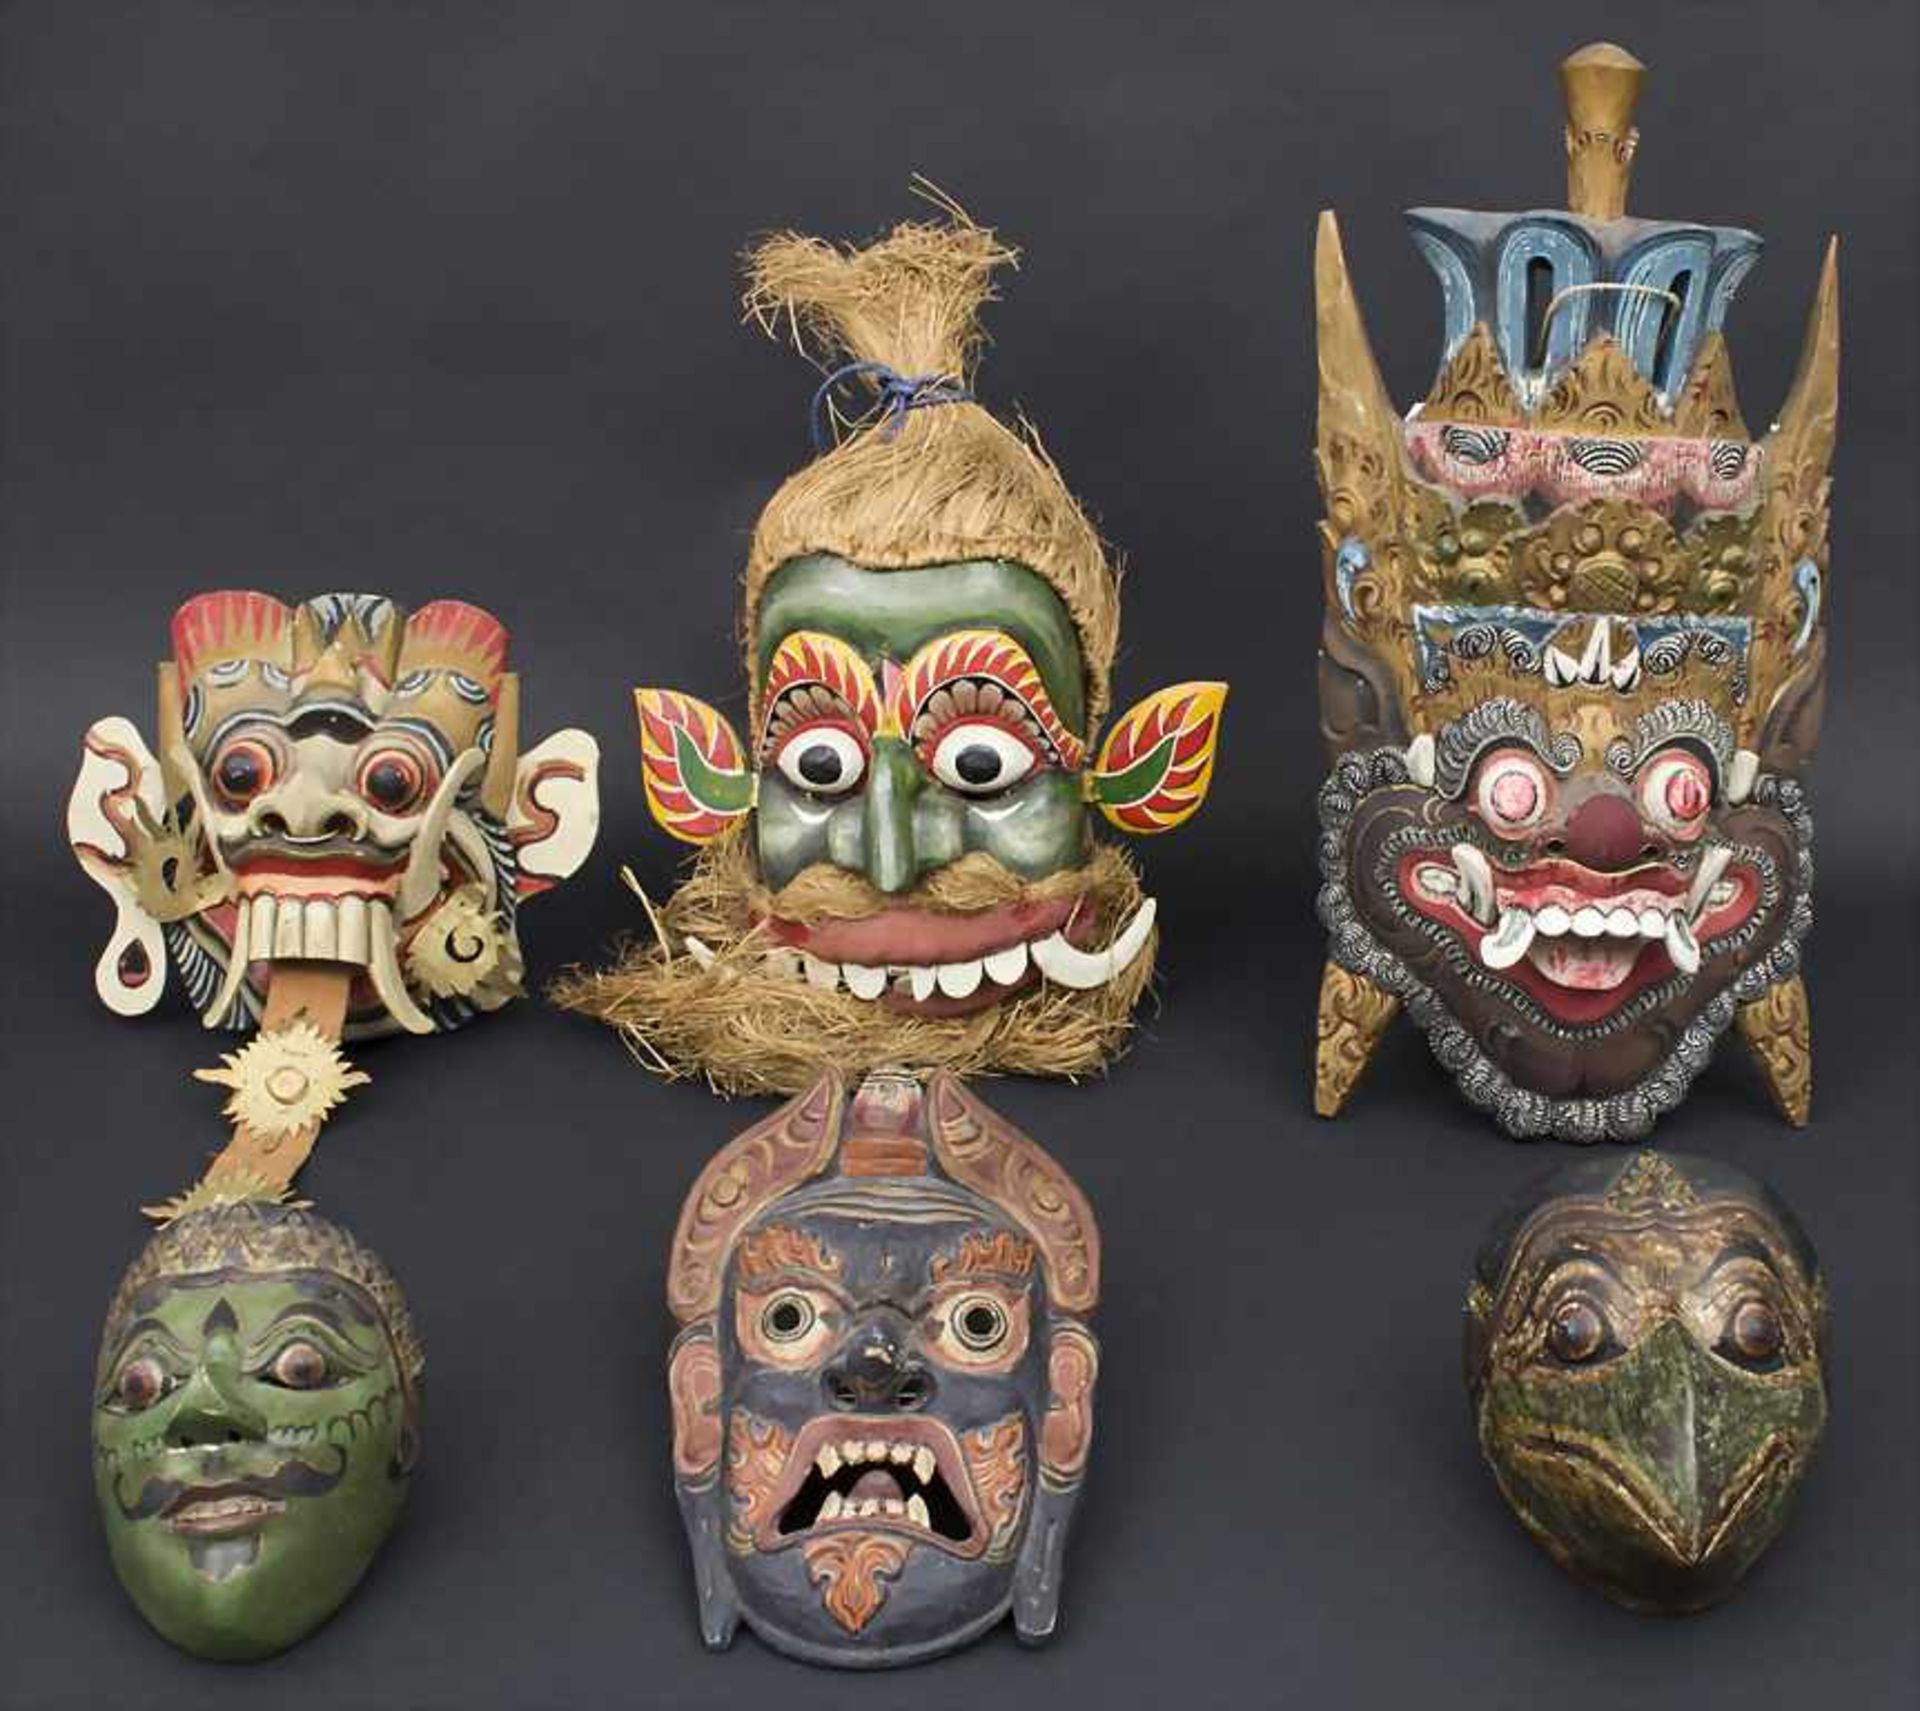 Konvolut von 6 Masken / 6 masks, Indonesien 20. Jh. Material: Holz, polychrom bemalt,Höhen: von 16 -